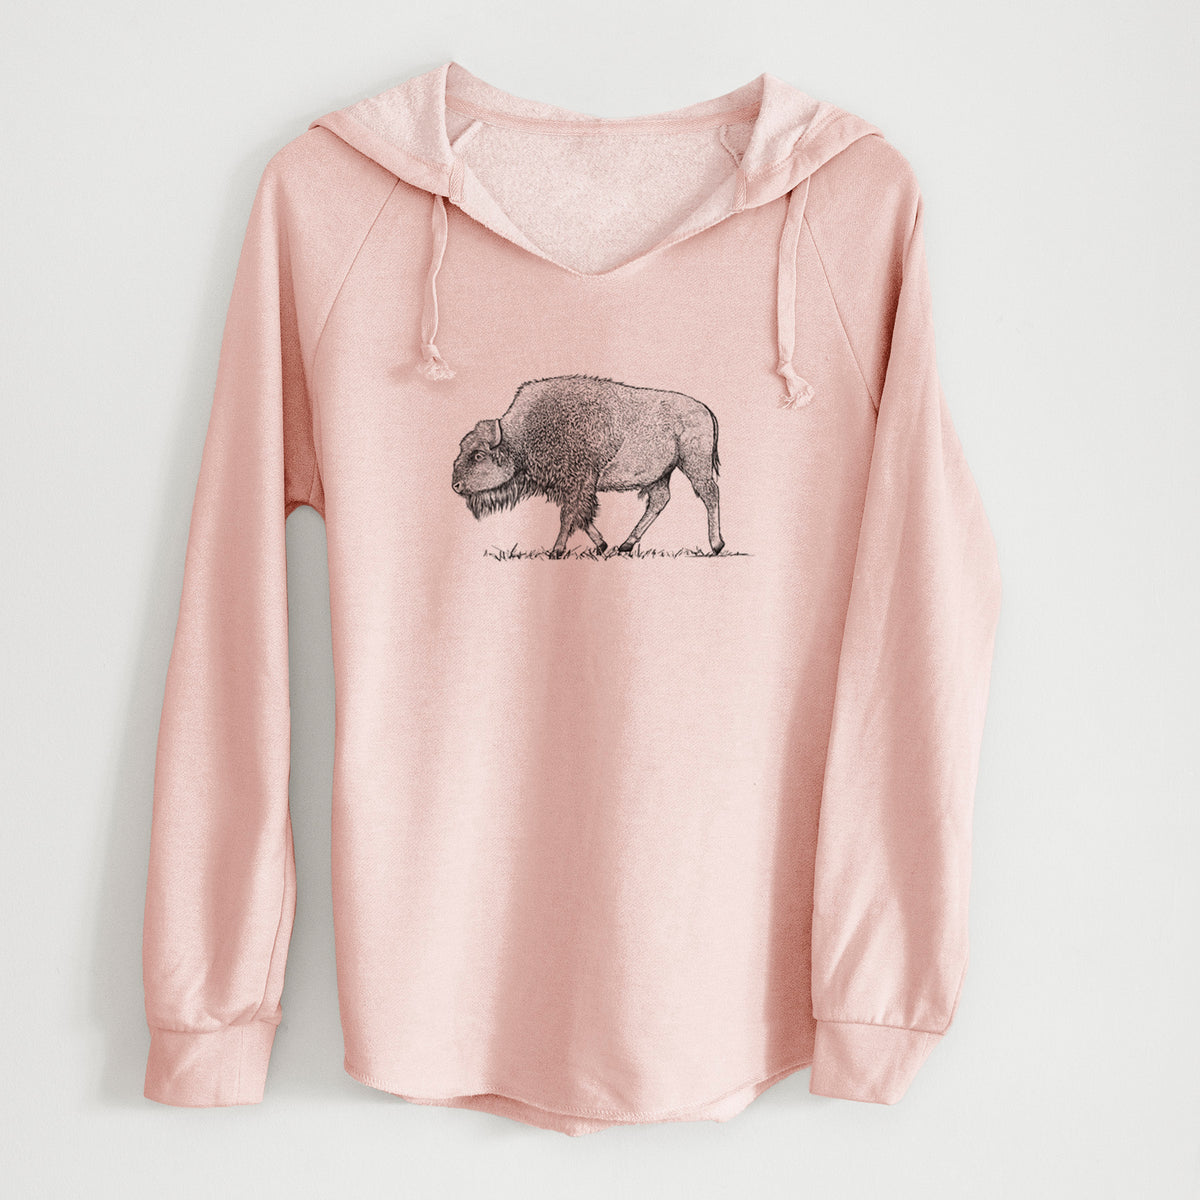 American Bison / Buffalo - Bison bison - Cali Wave Hooded Sweatshirt